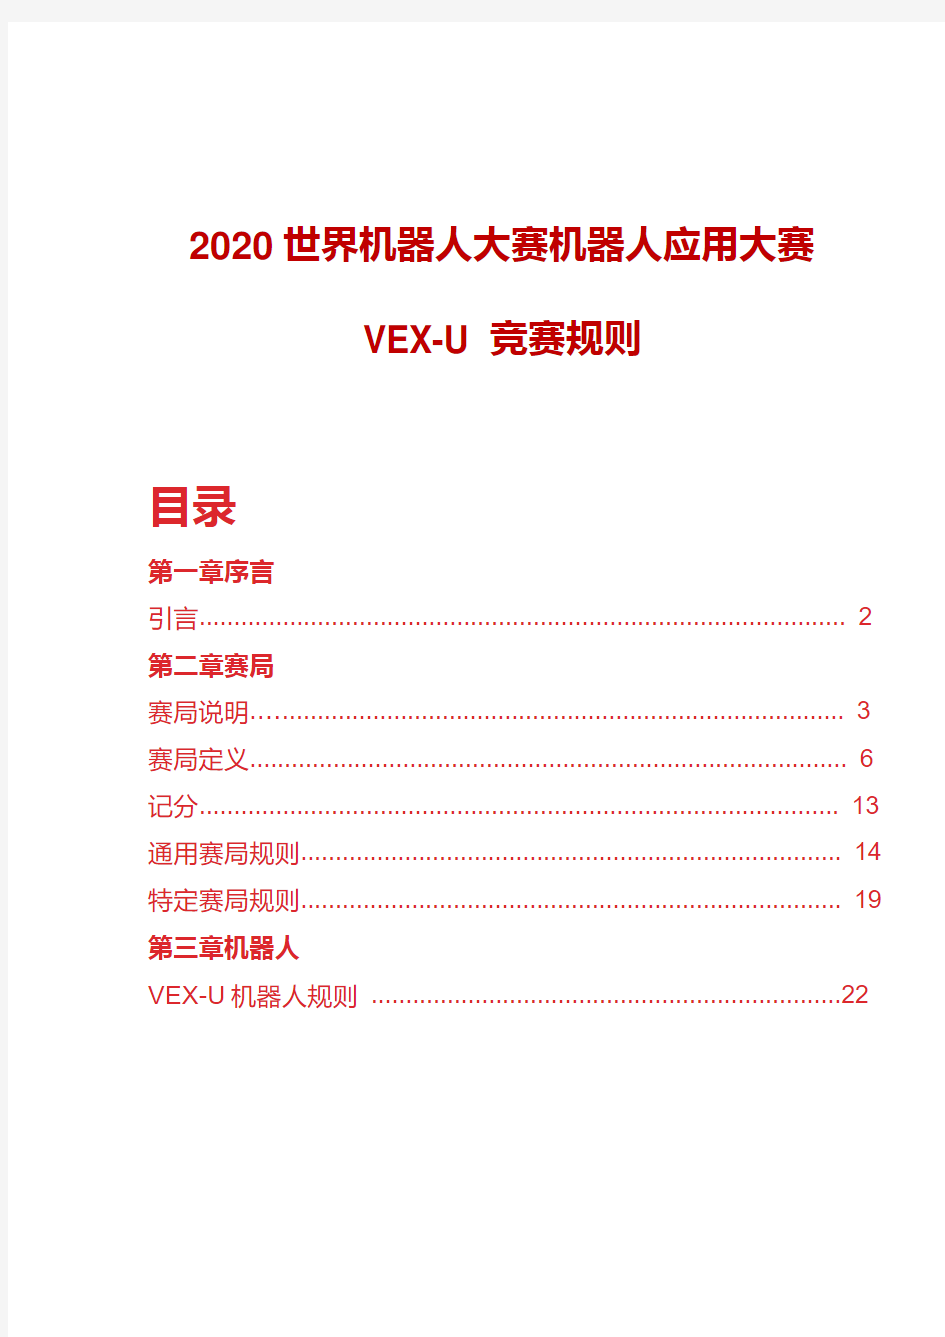 2020世界机器人大赛机器人应用大赛VEX-U竞赛规则